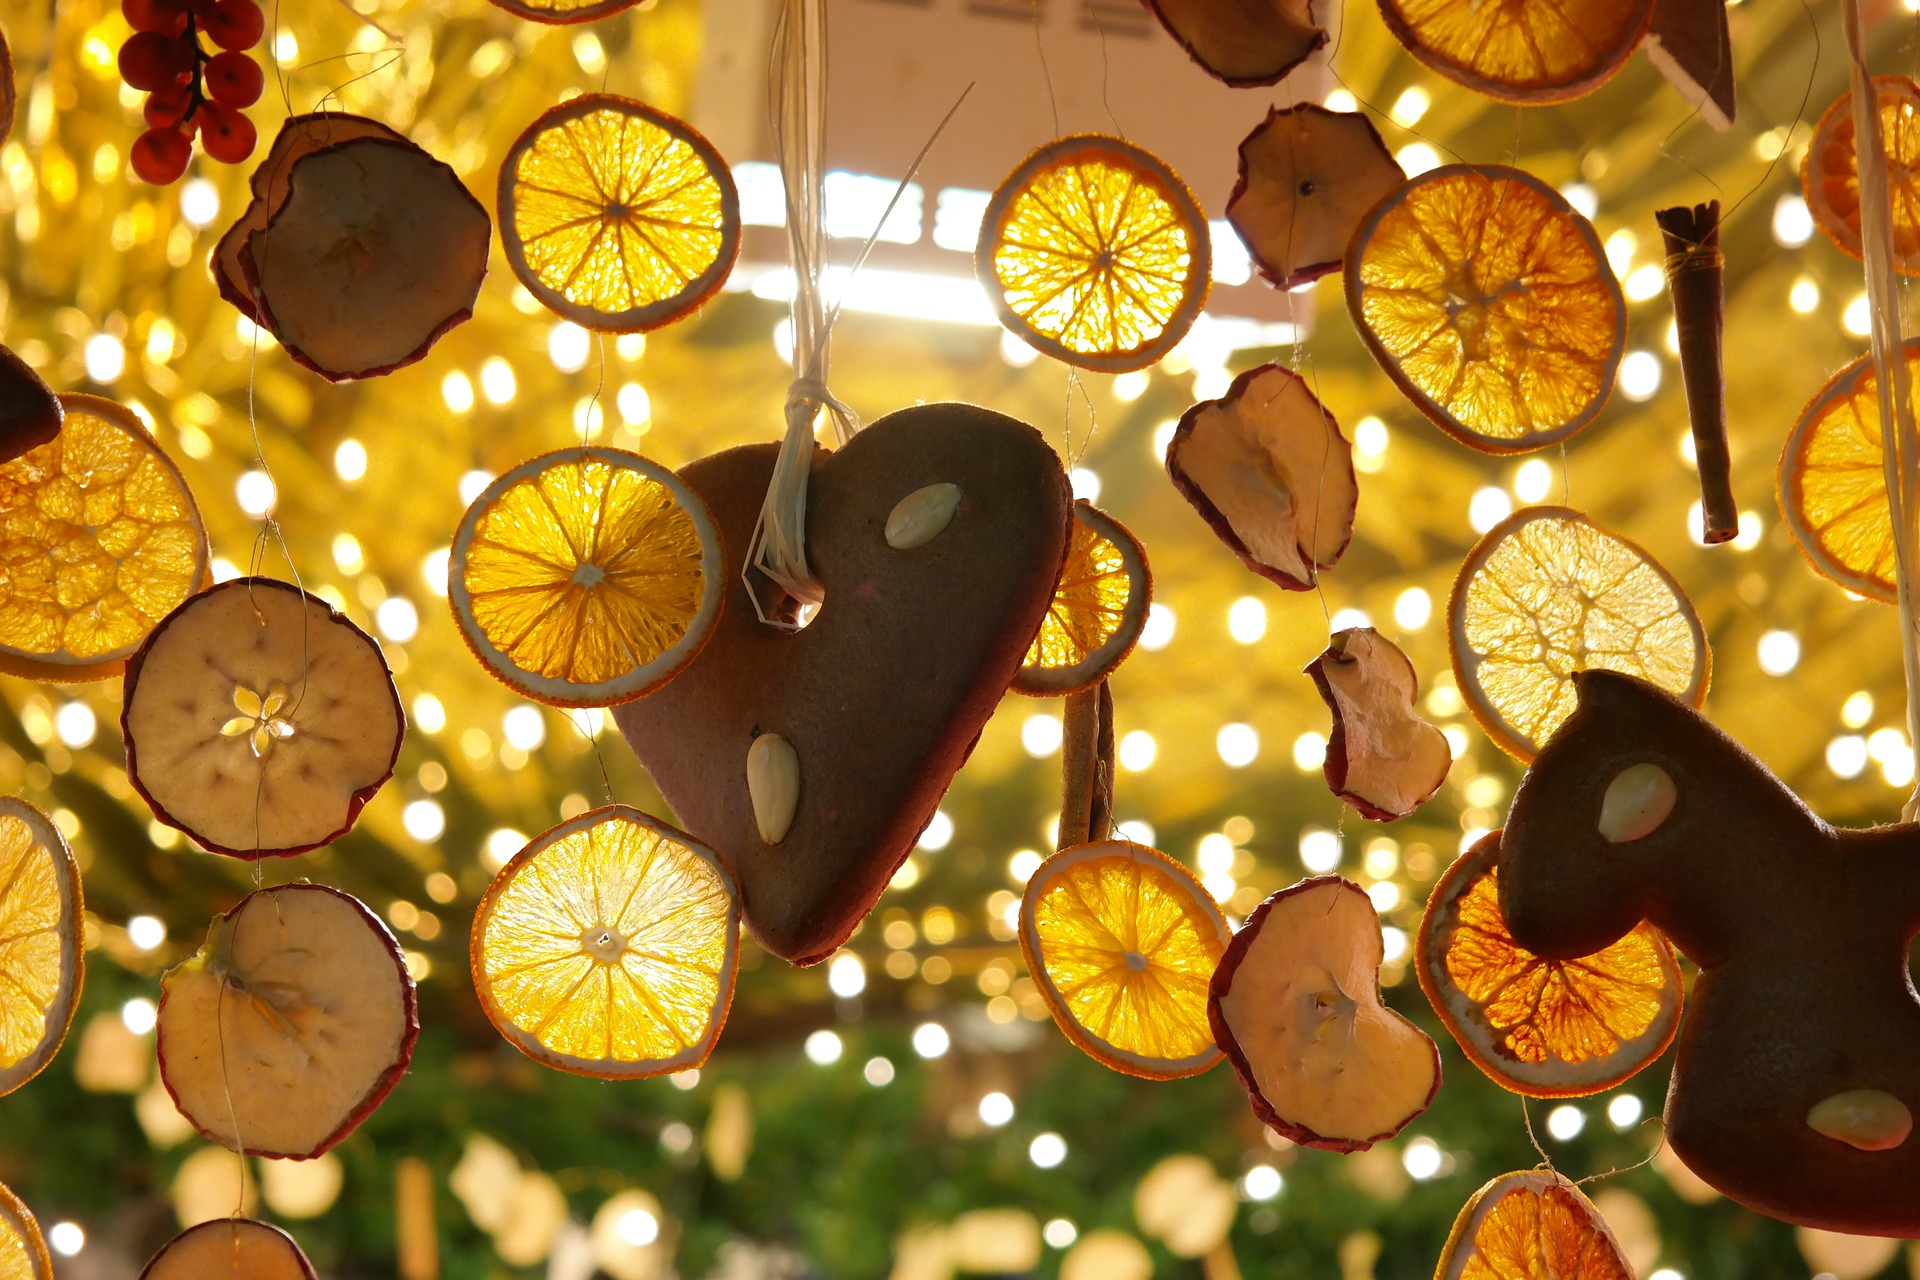 Des citrons et un cœur en pain d'épice sont accrochés à un stand de marché en guise de décoration